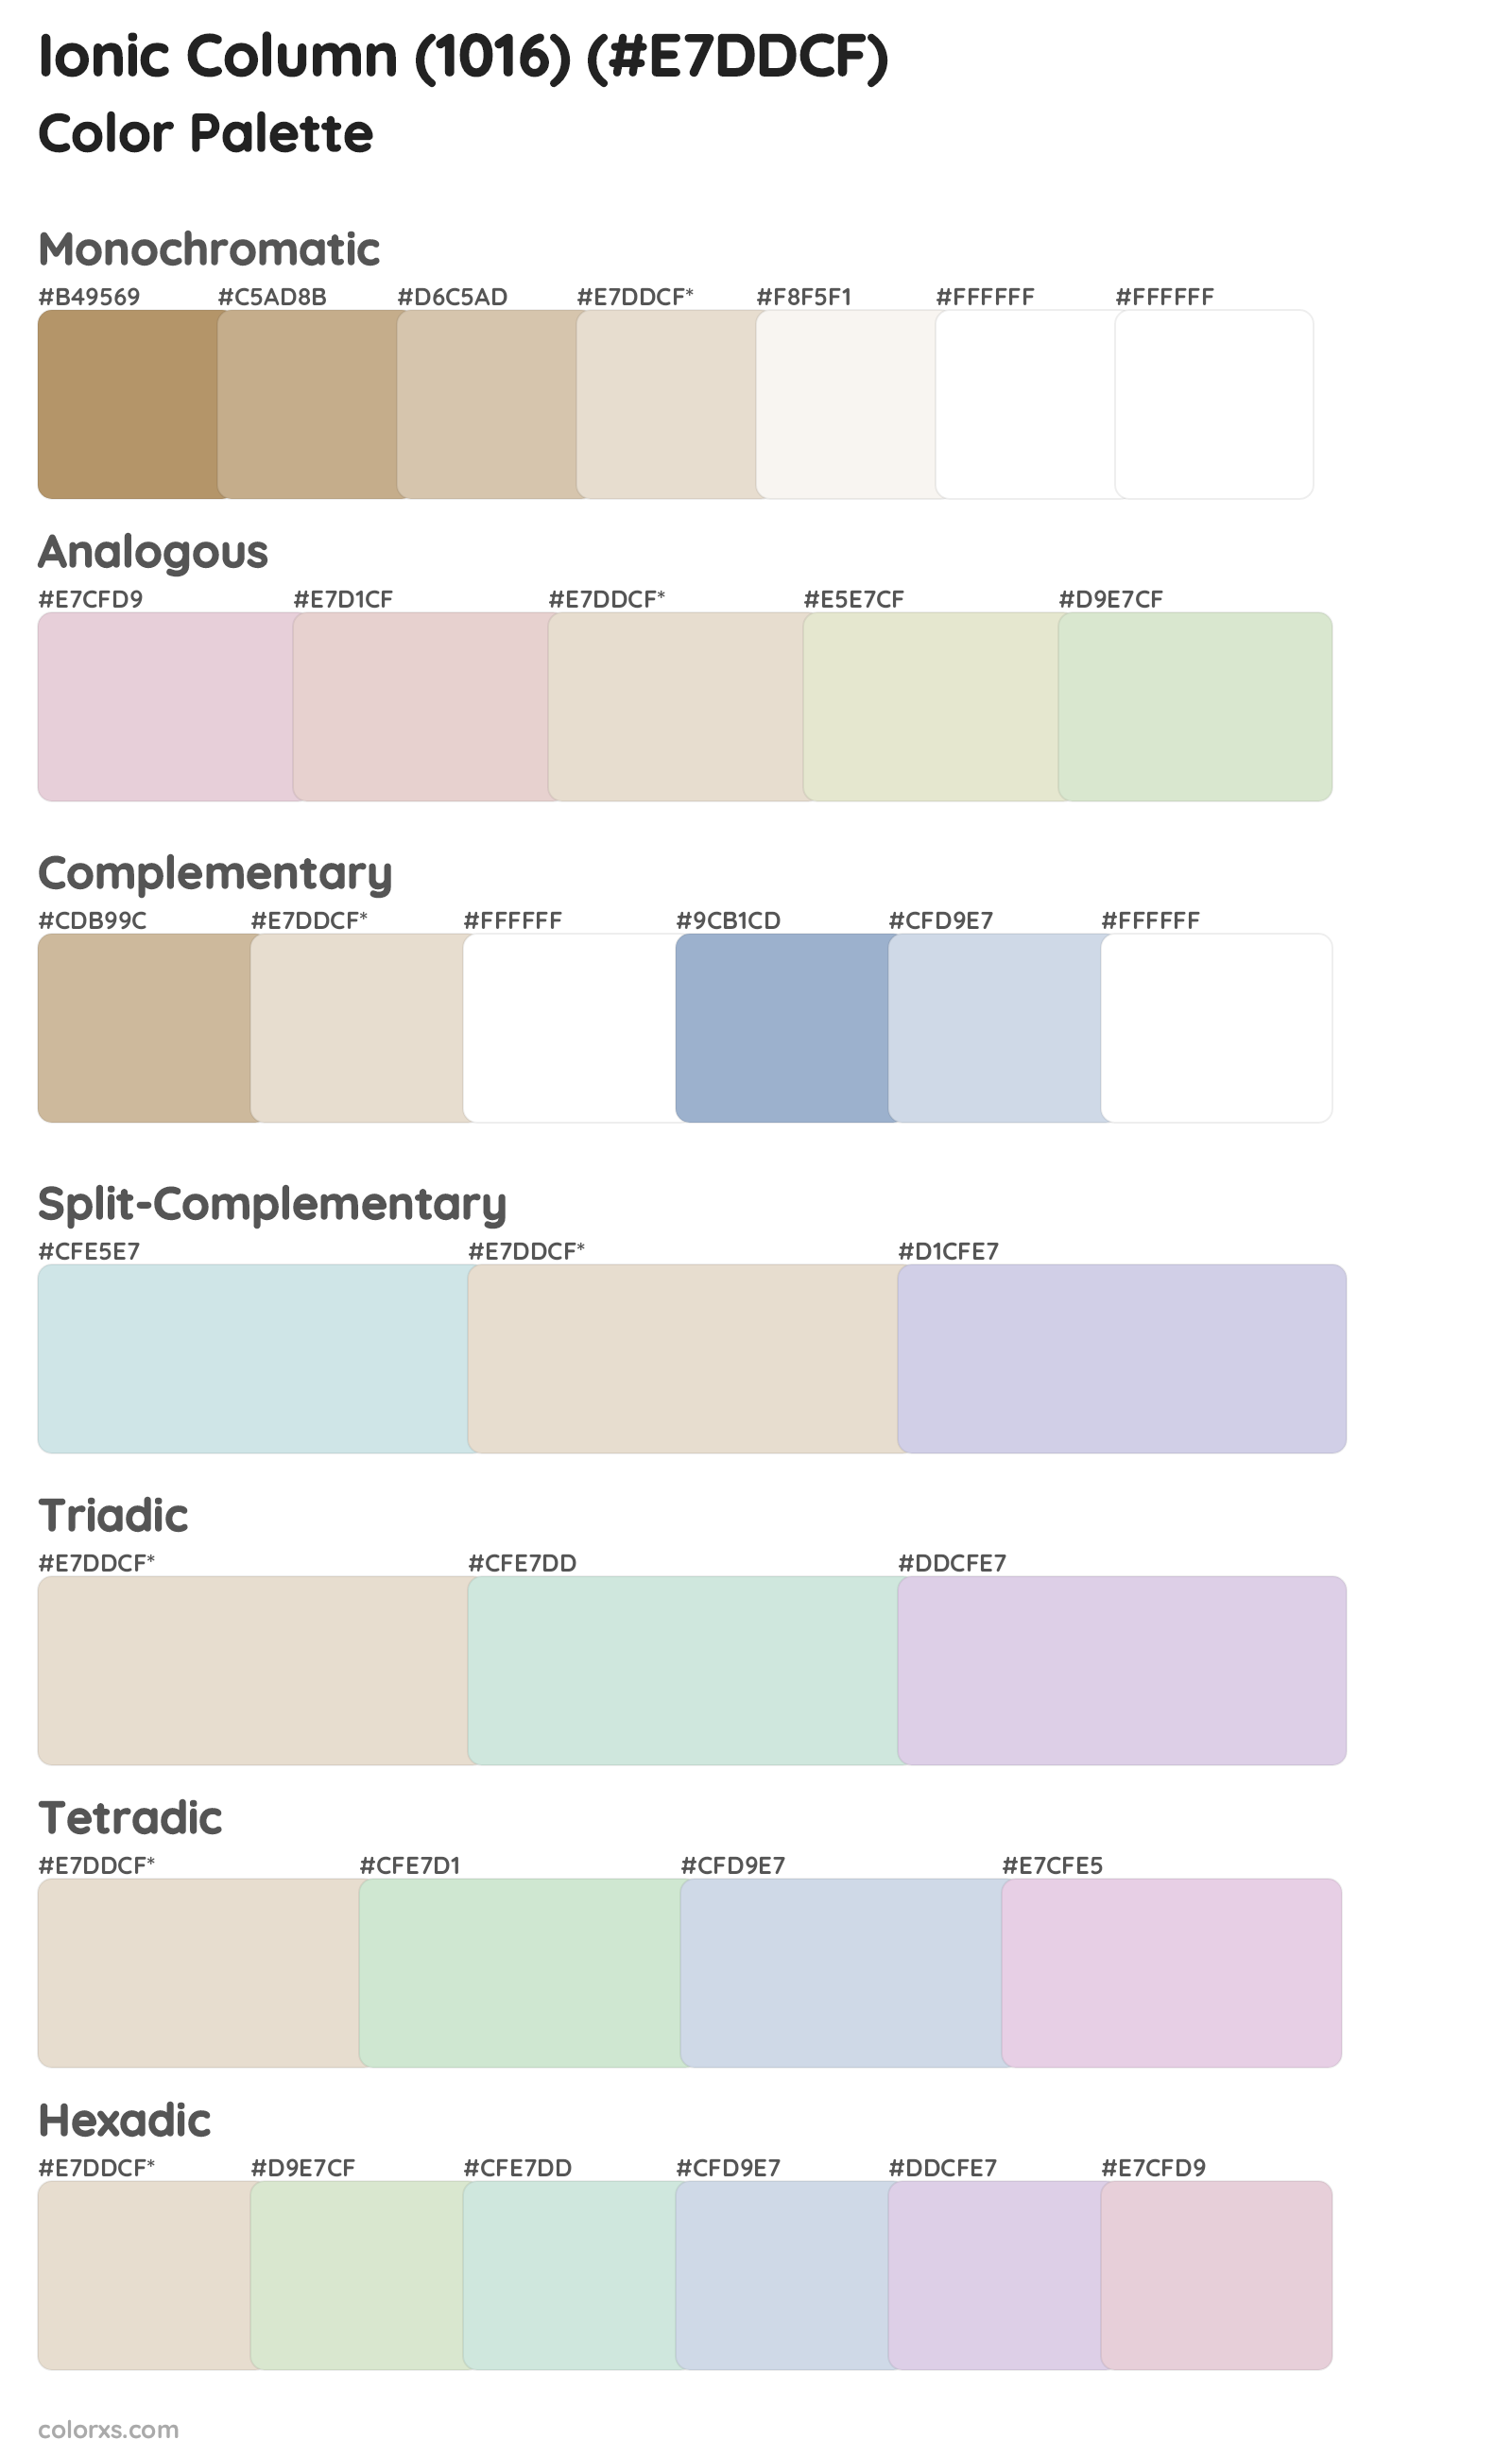 Ionic Column (1016) Color Scheme Palettes